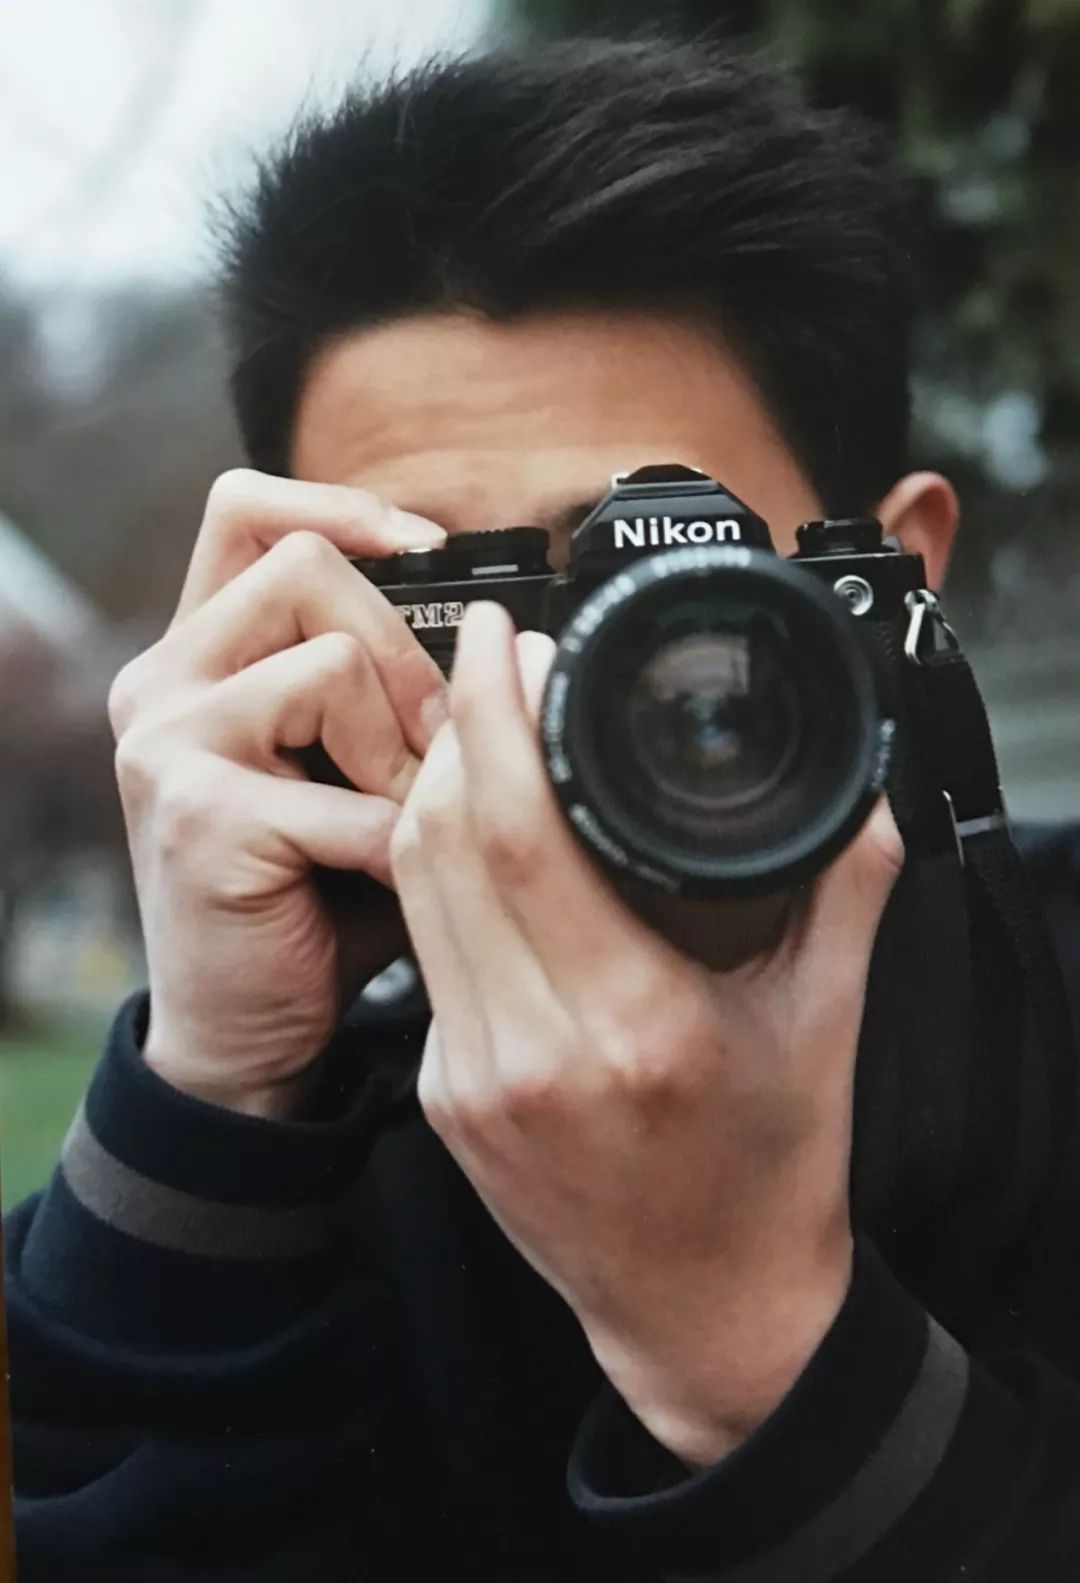 中国少年18岁夺得全球摄影大赛美国区冠军，00后重启胶卷摄影的艺术魅力！